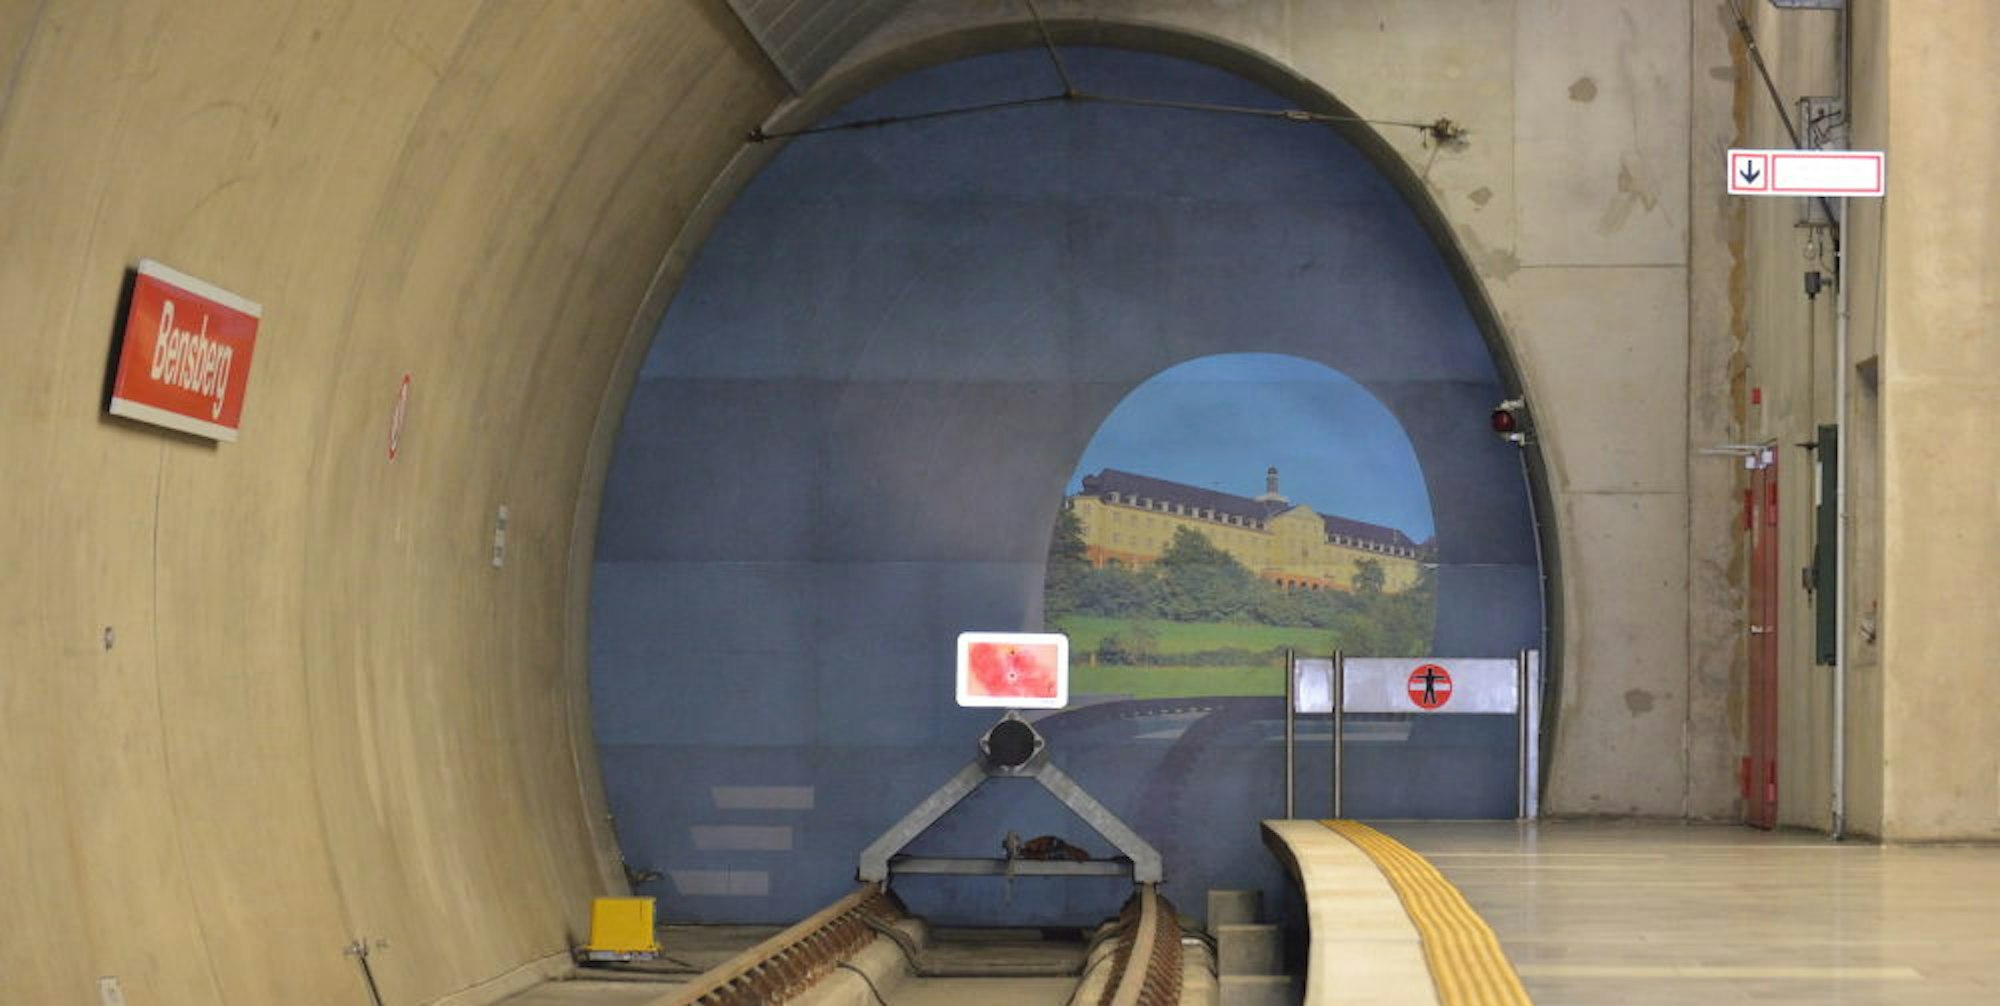 Vorerst nichts als eine sonnige Illusion auf der Tunnelwand: Im Bensberger U-Bahnhof wird die Linie 1 auf absehbare Zeit weiterhin enden.